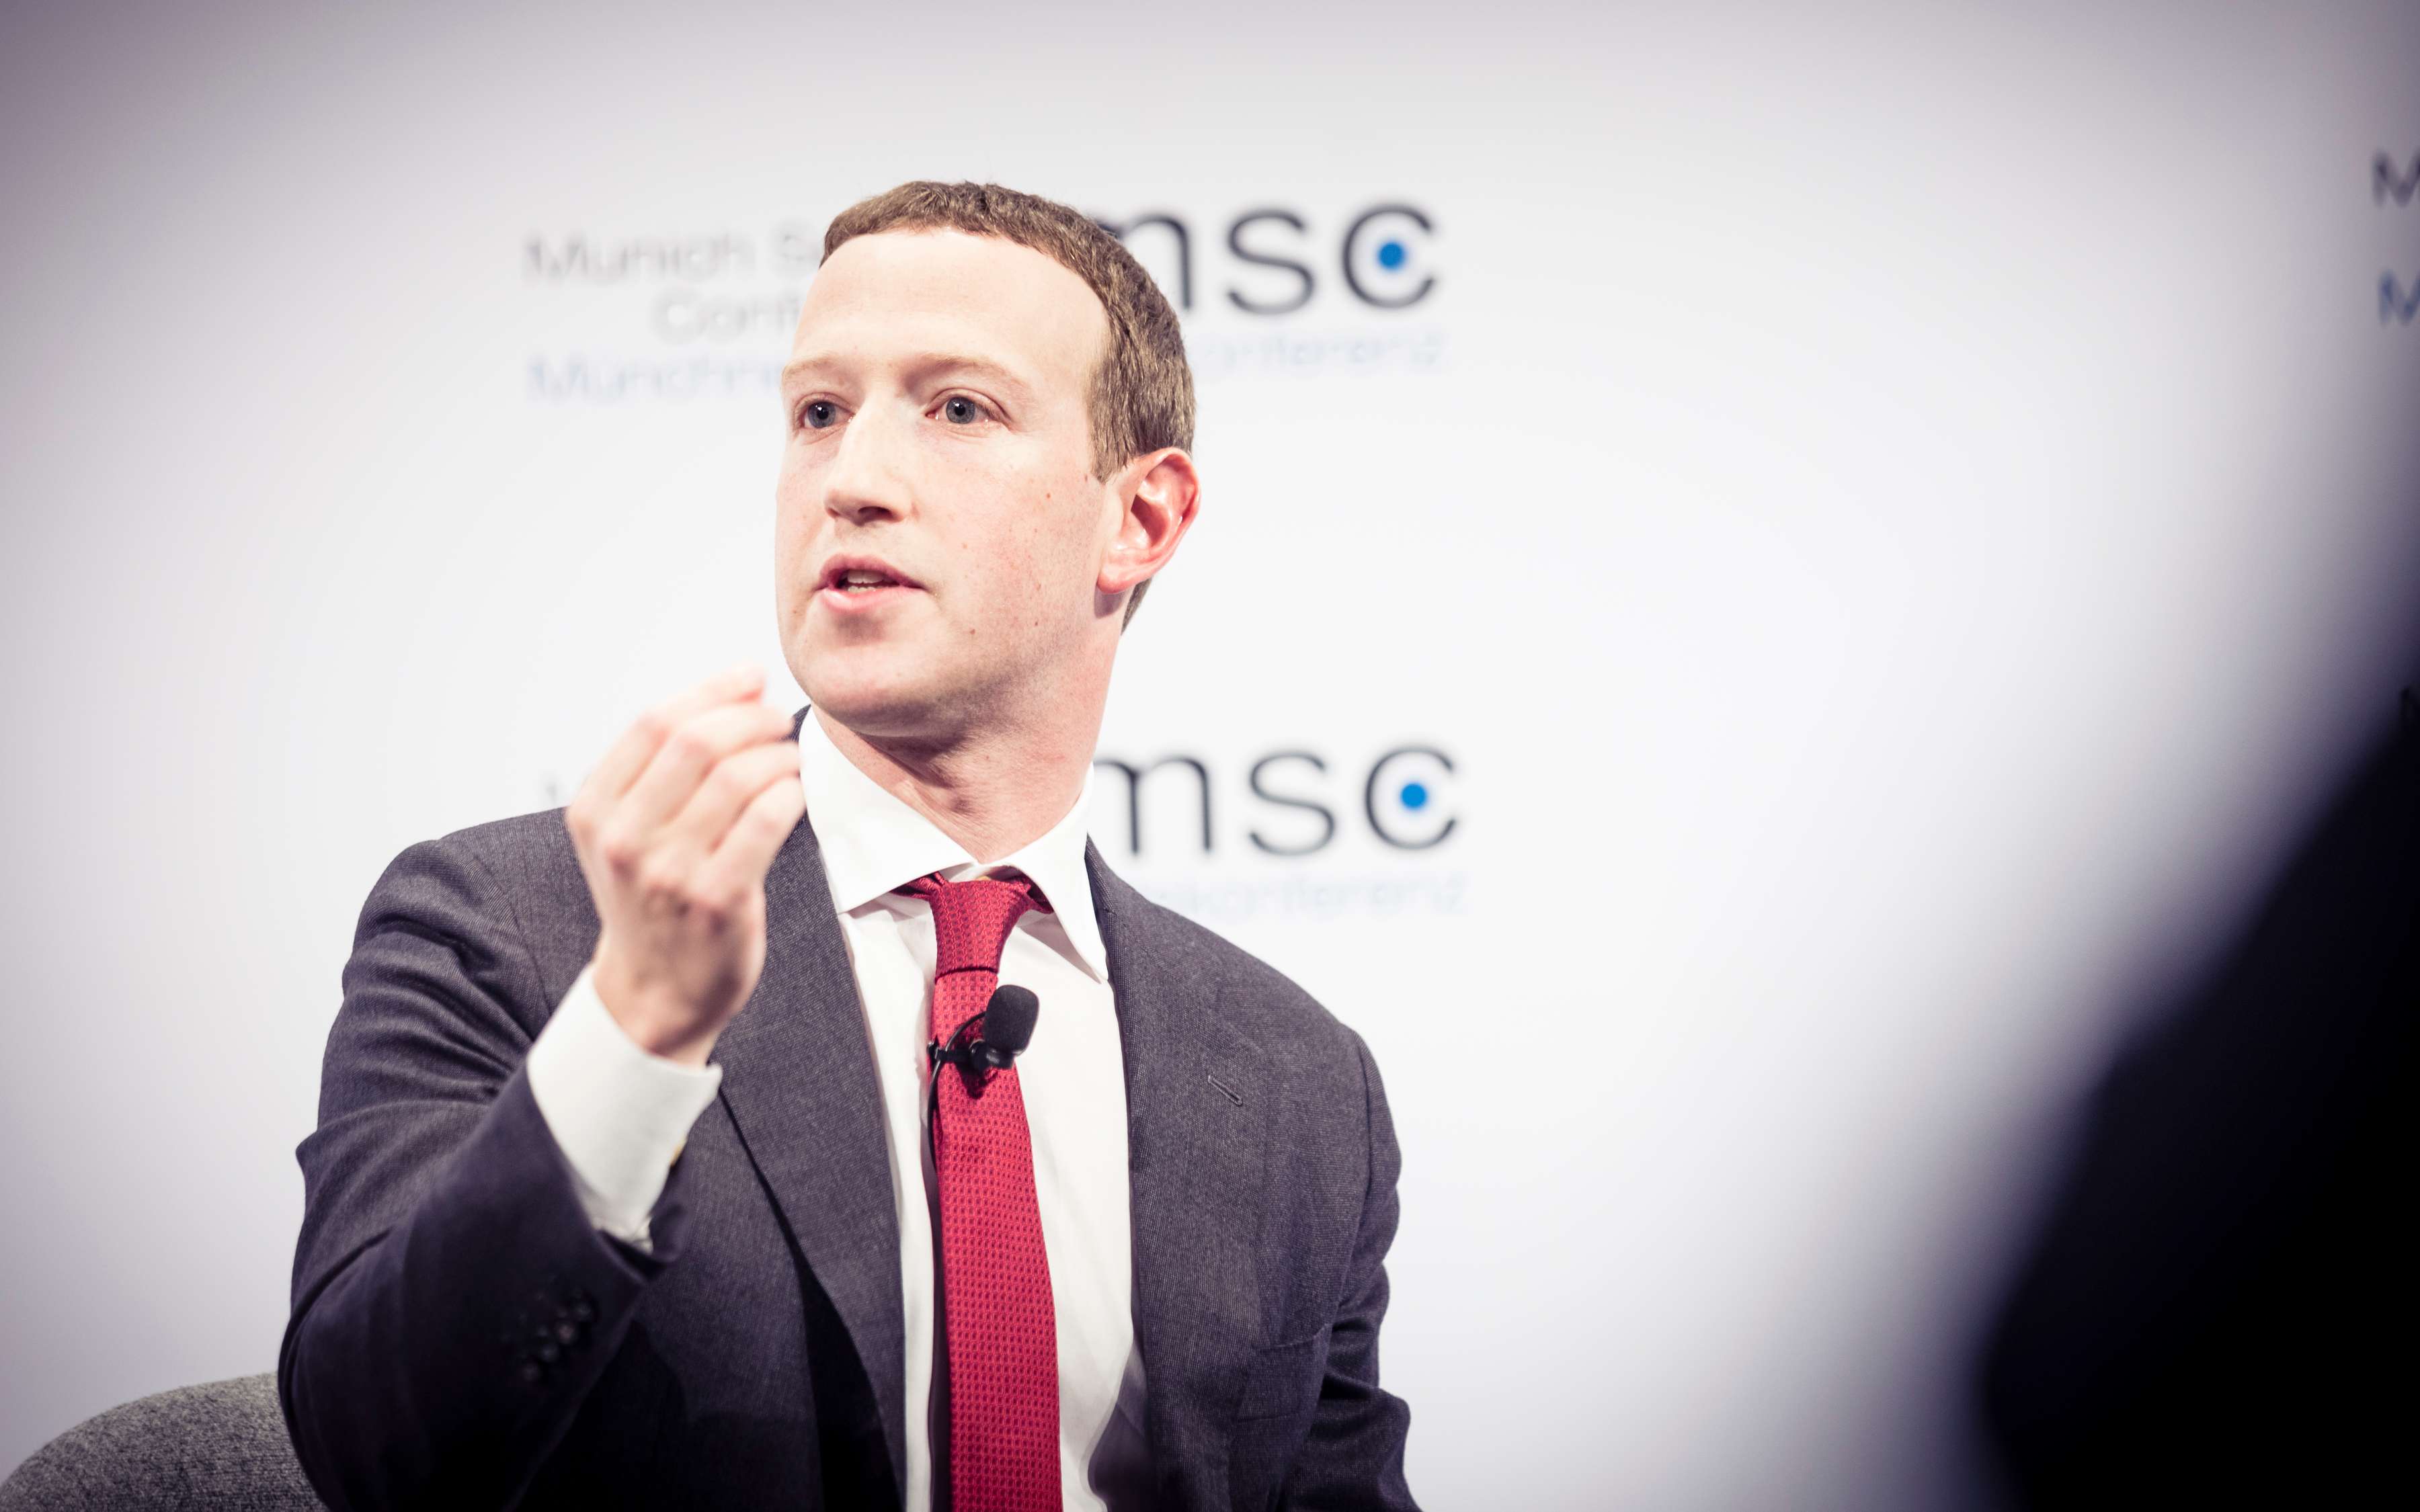 Zuckerberg responds to Facebook employees upset over Trump post